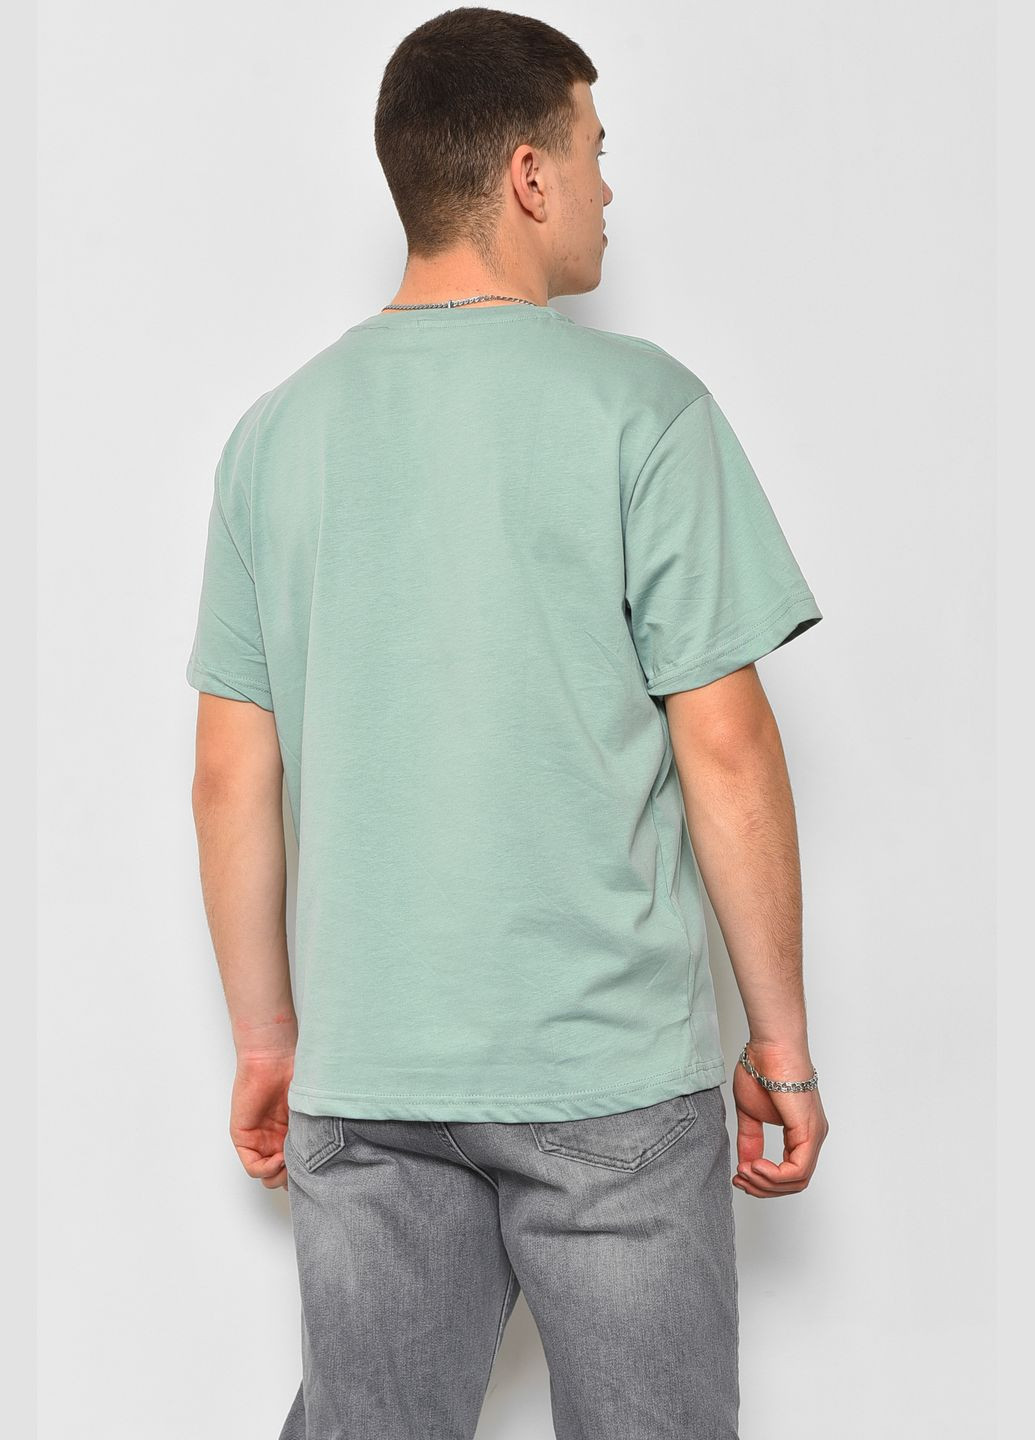 Мятная футболка мужская мятного цвета Let's Shop